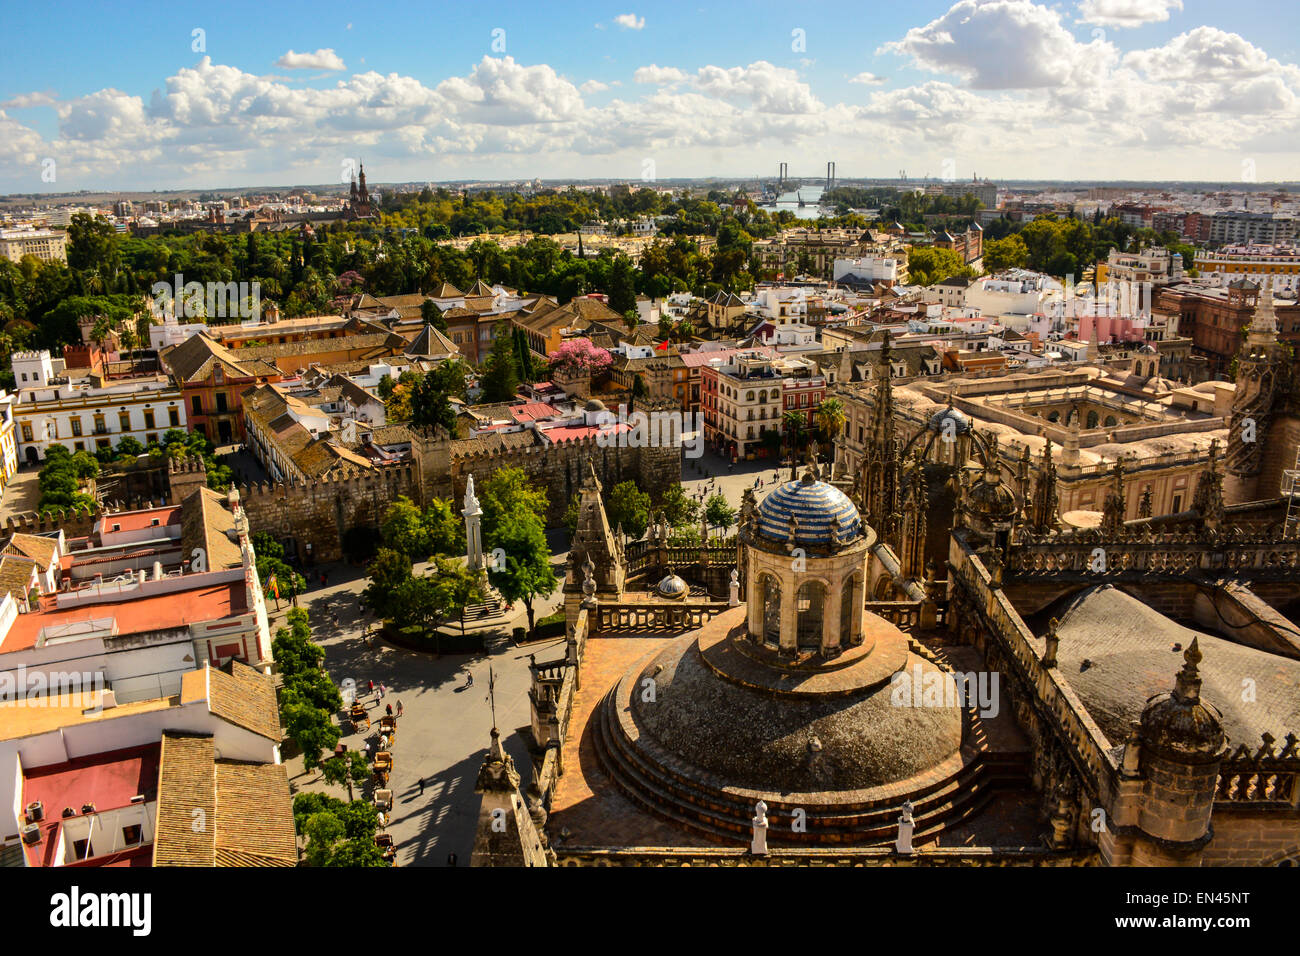 Vue panoramique de la romantique ville de Séville, Espagne. Banque D'Images